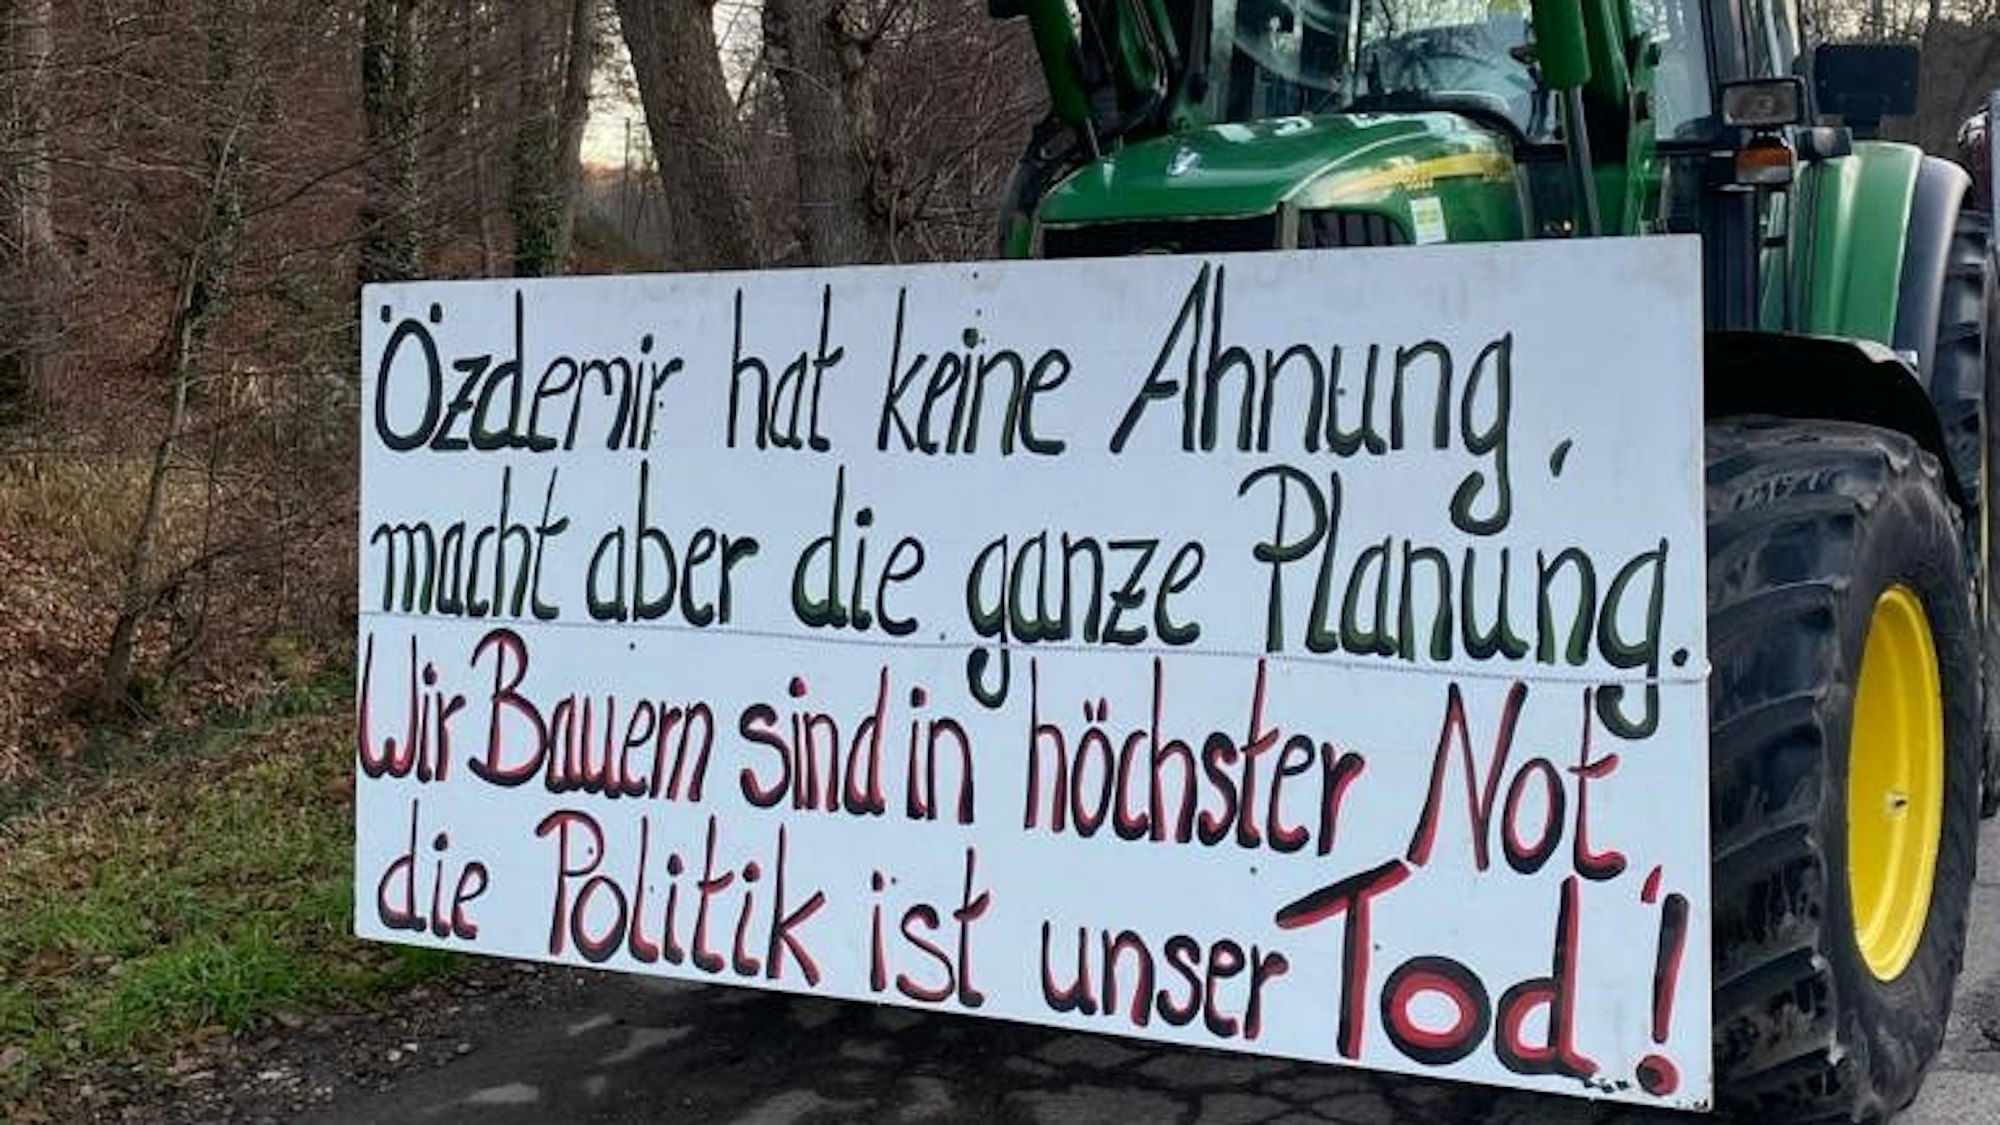 Ein Traktor aus einem Lichterzug trägt ein Plakat mit der Aufschrift „Özdemir hat keine Ahnung, macht aber die ganze Planung. Wir Bauern sind in höchster Not, die Politik ist unser Tod“.